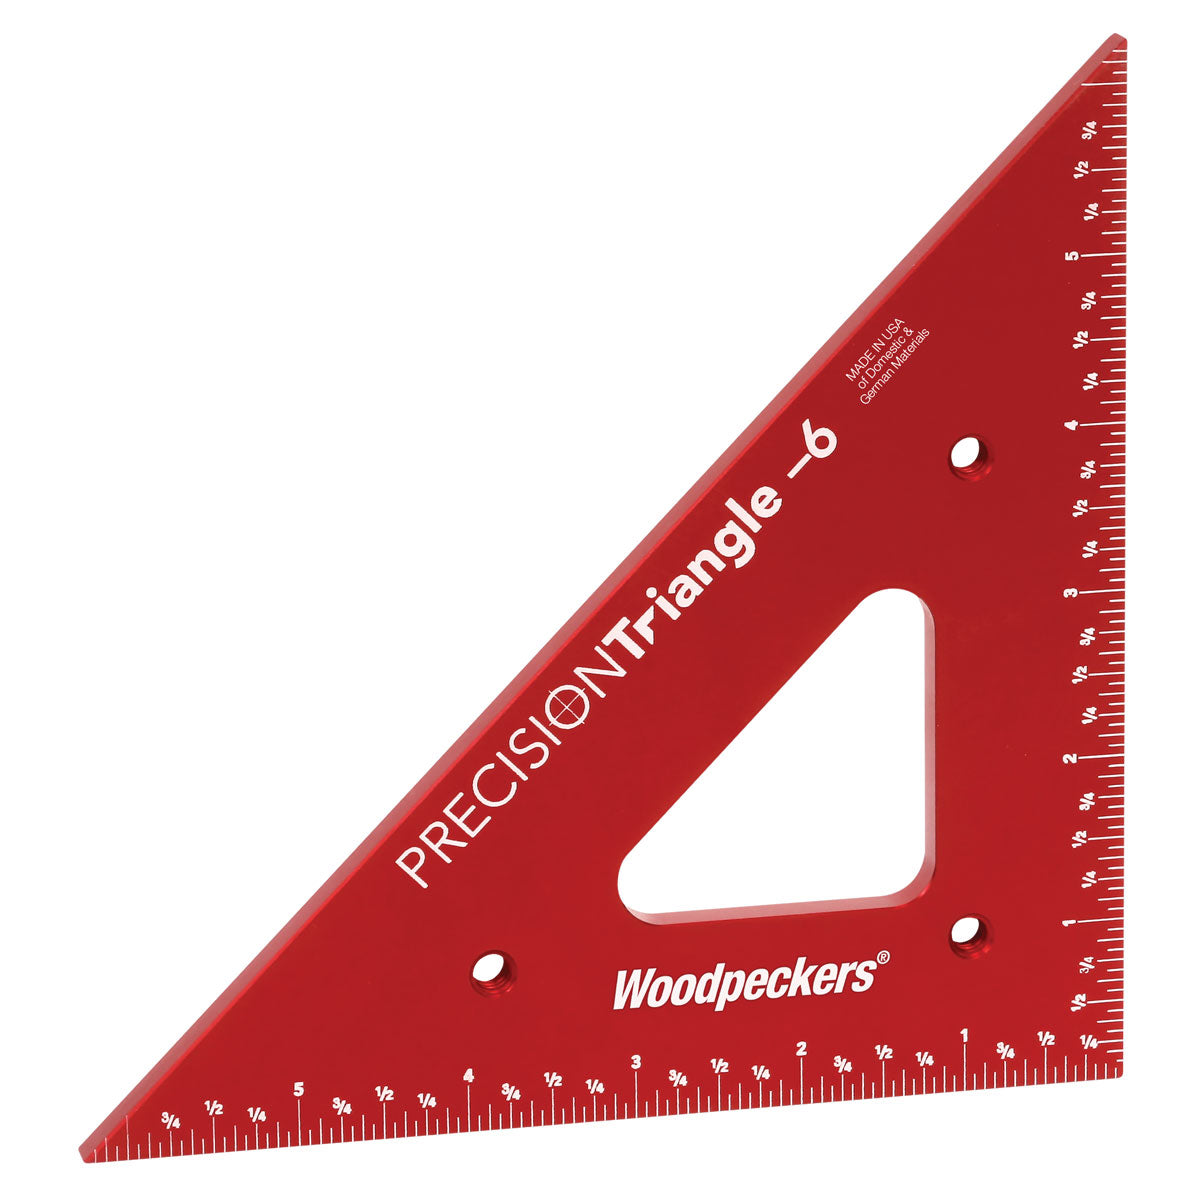 Woodpeckers Precision Triangle Set 4.375" + 6.25"